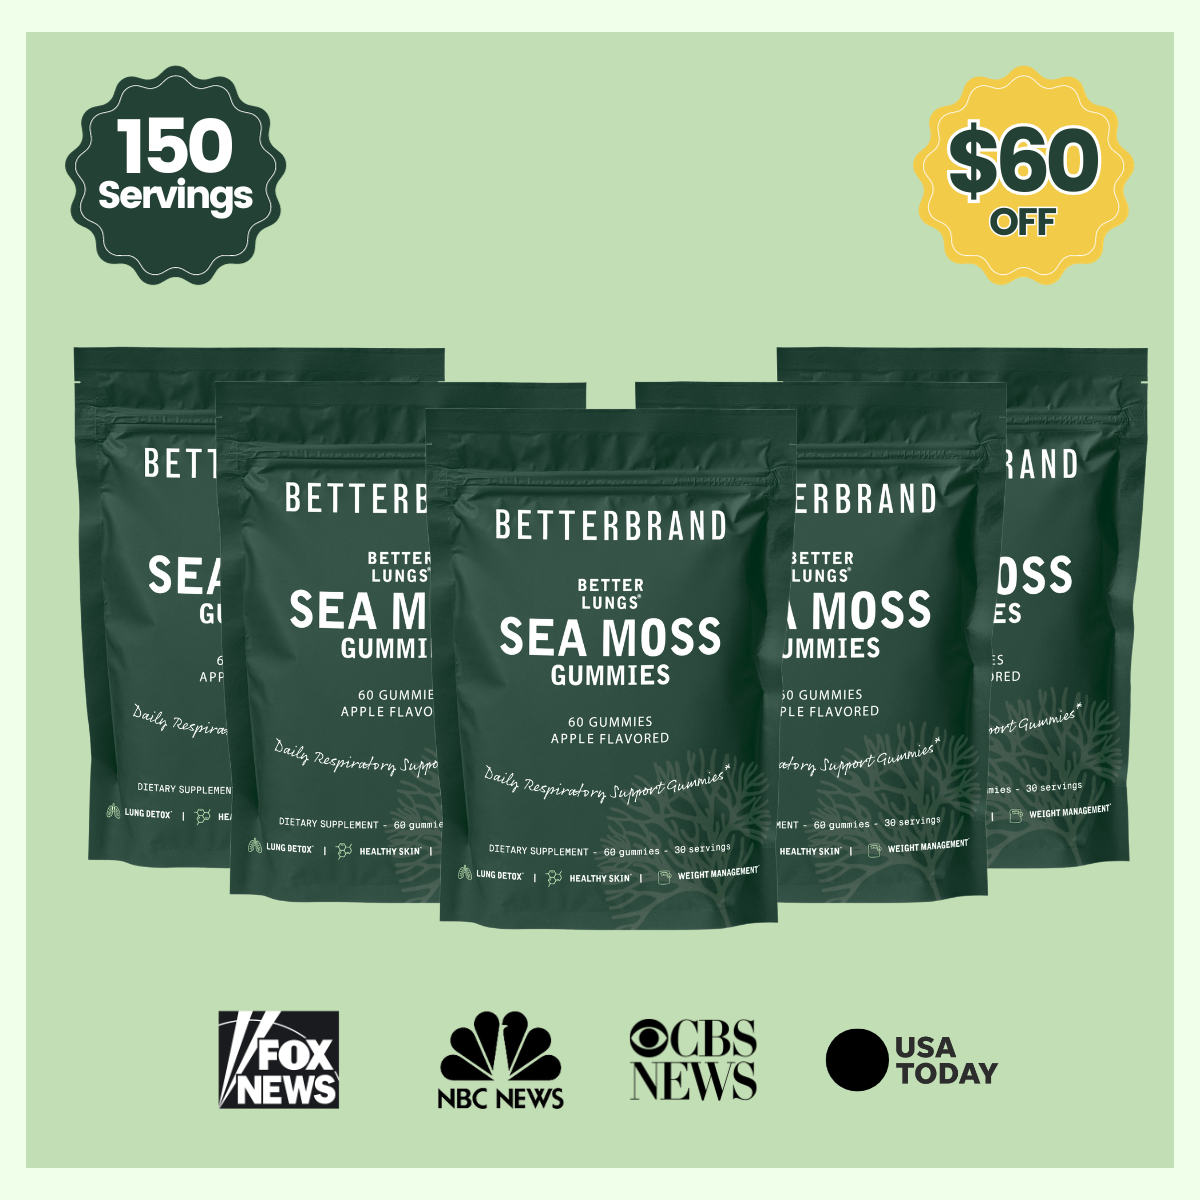 BetterLungs® Sea Moss Gummies - Betterbrand